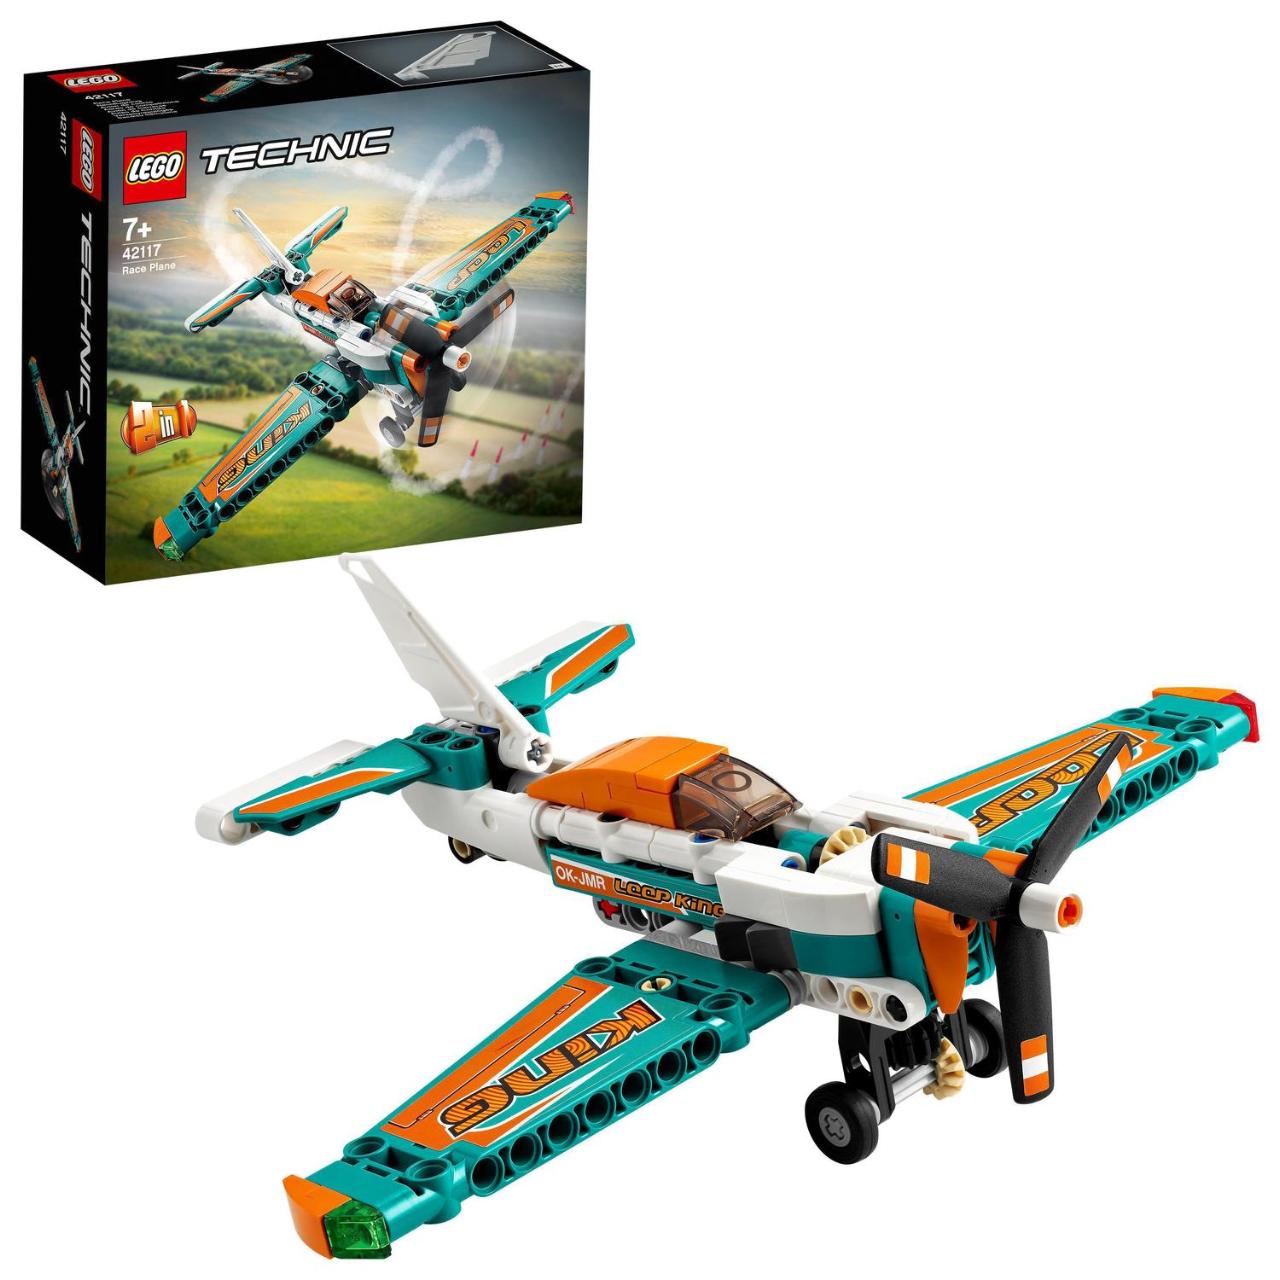 LEGO Technic, Avion de curse, numar piese 154, varsta 7+